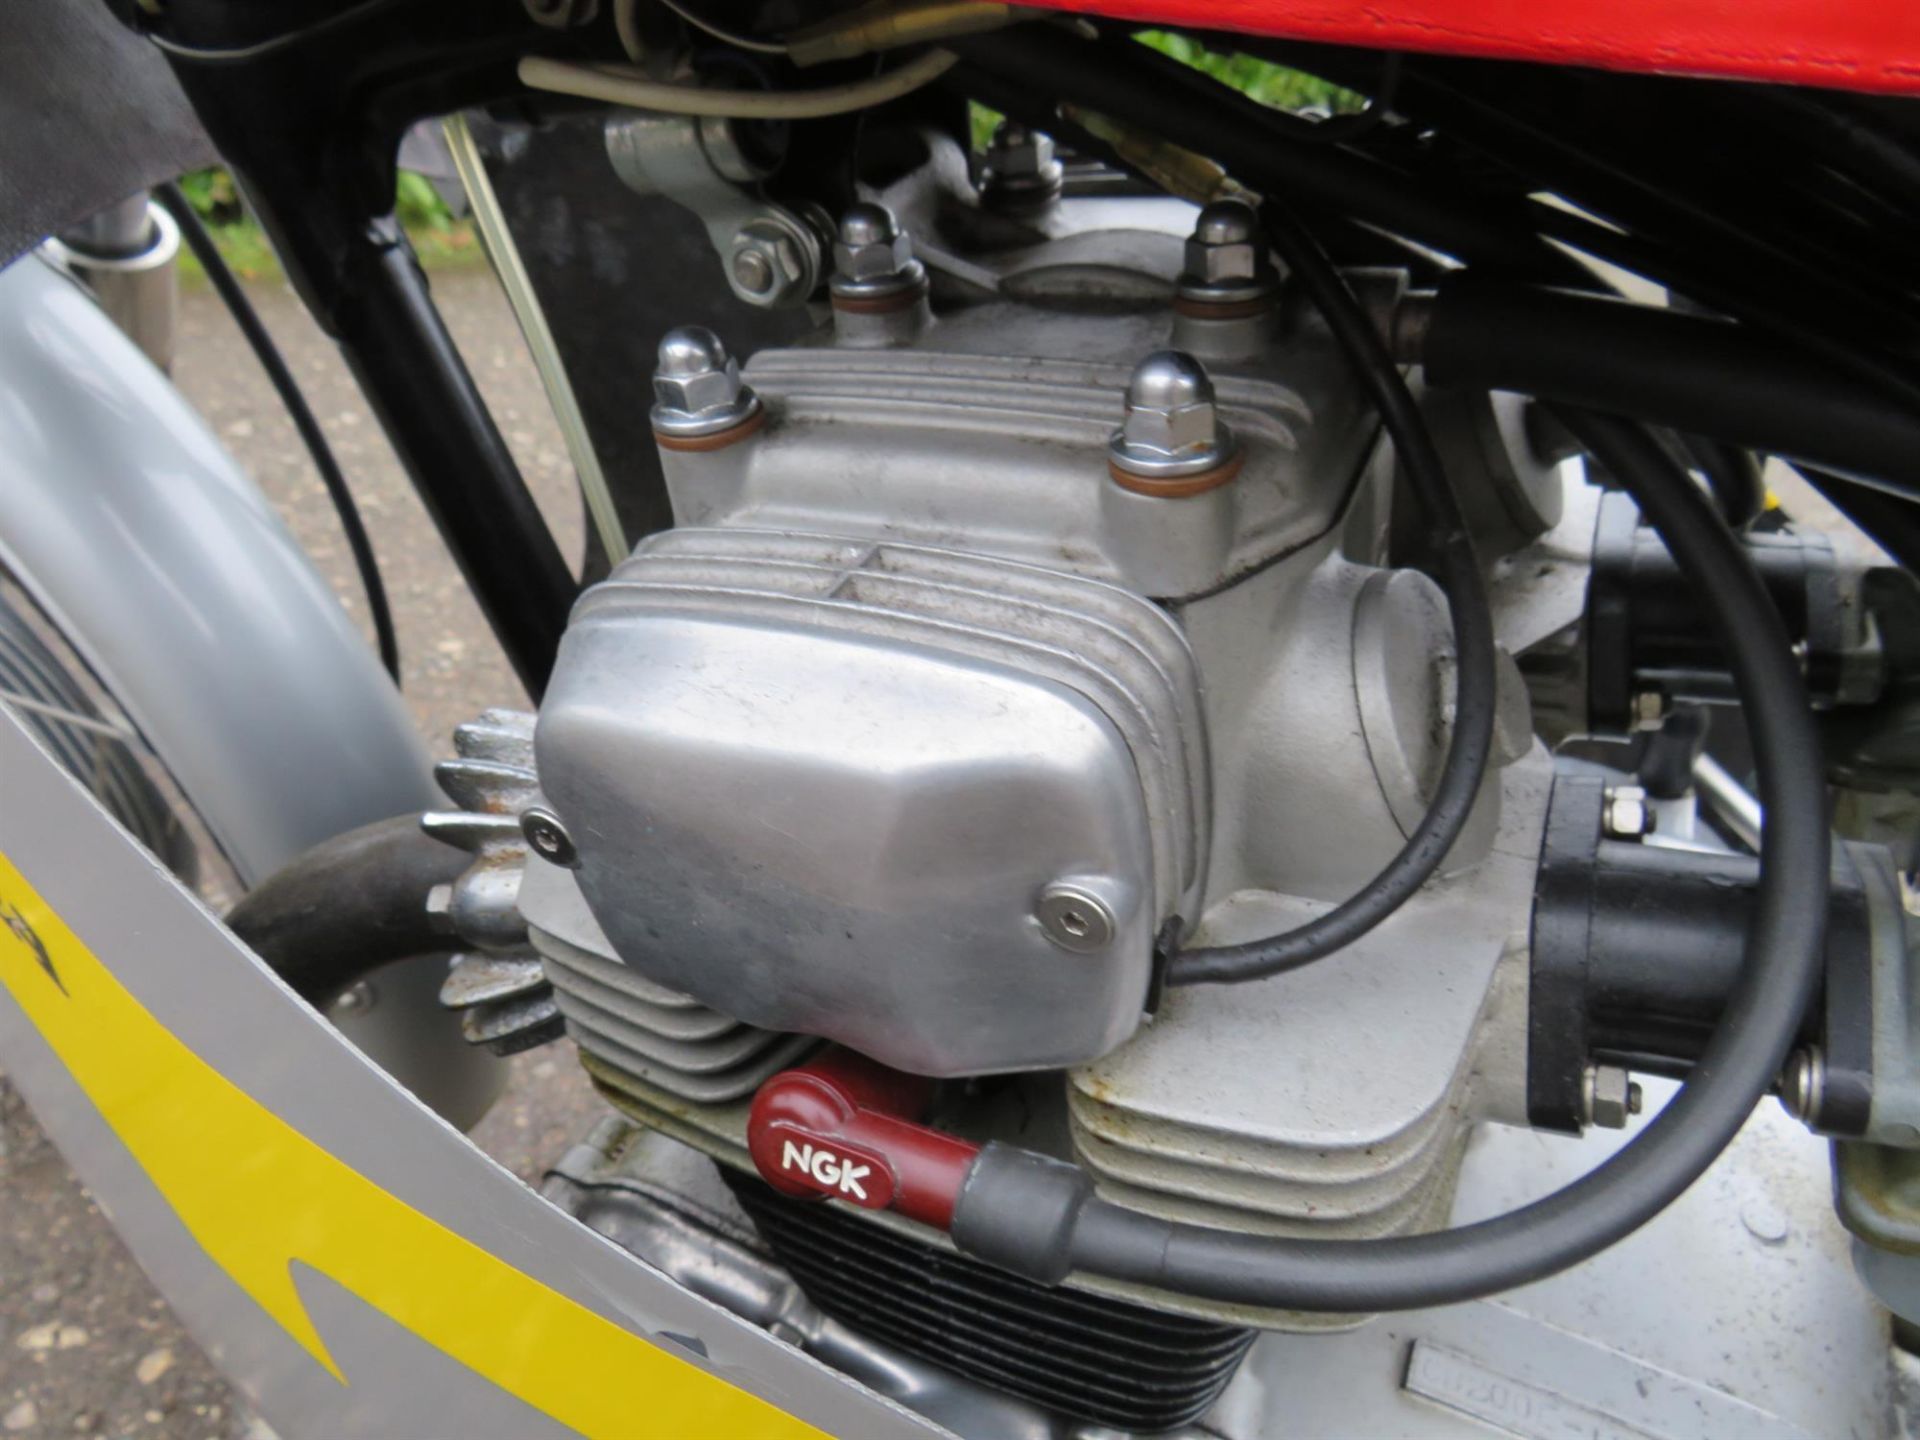 1977 Honda CB200 'RC116' Replica 198cc - Image 10 of 10